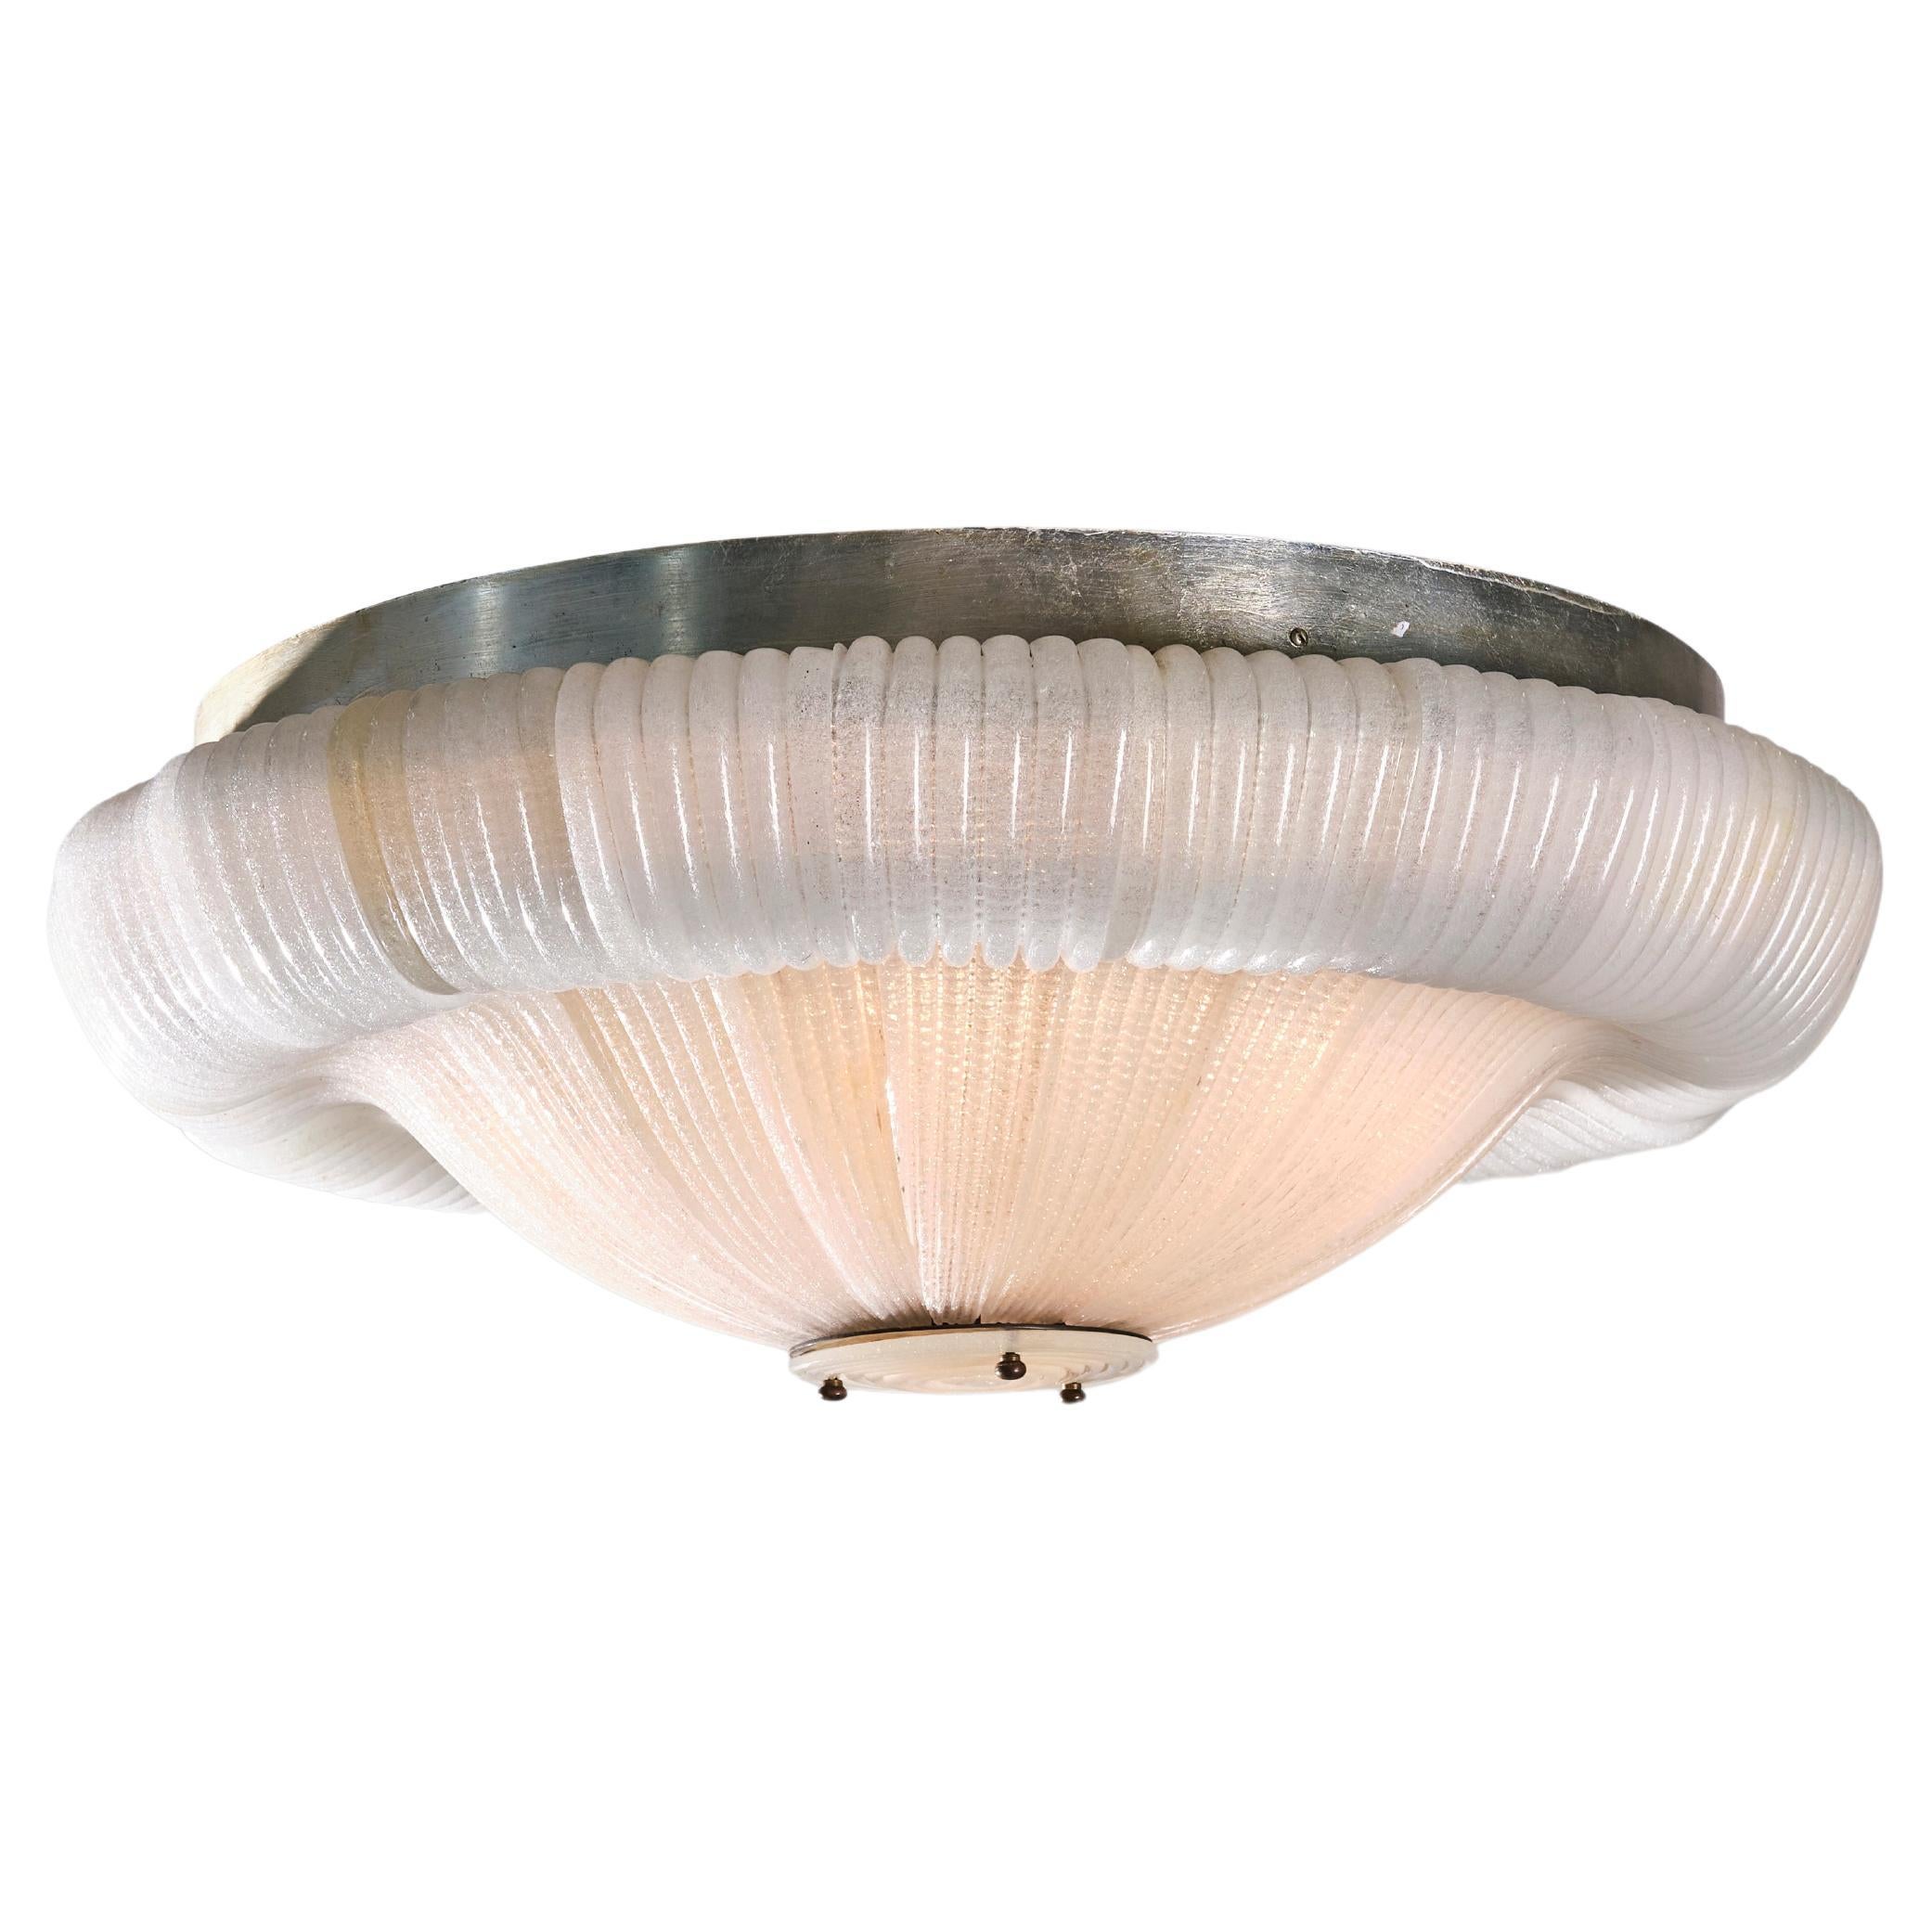 Venini 1940s Ceiling Lamp, Murano Cordonato Glass and Brass, Italian Design